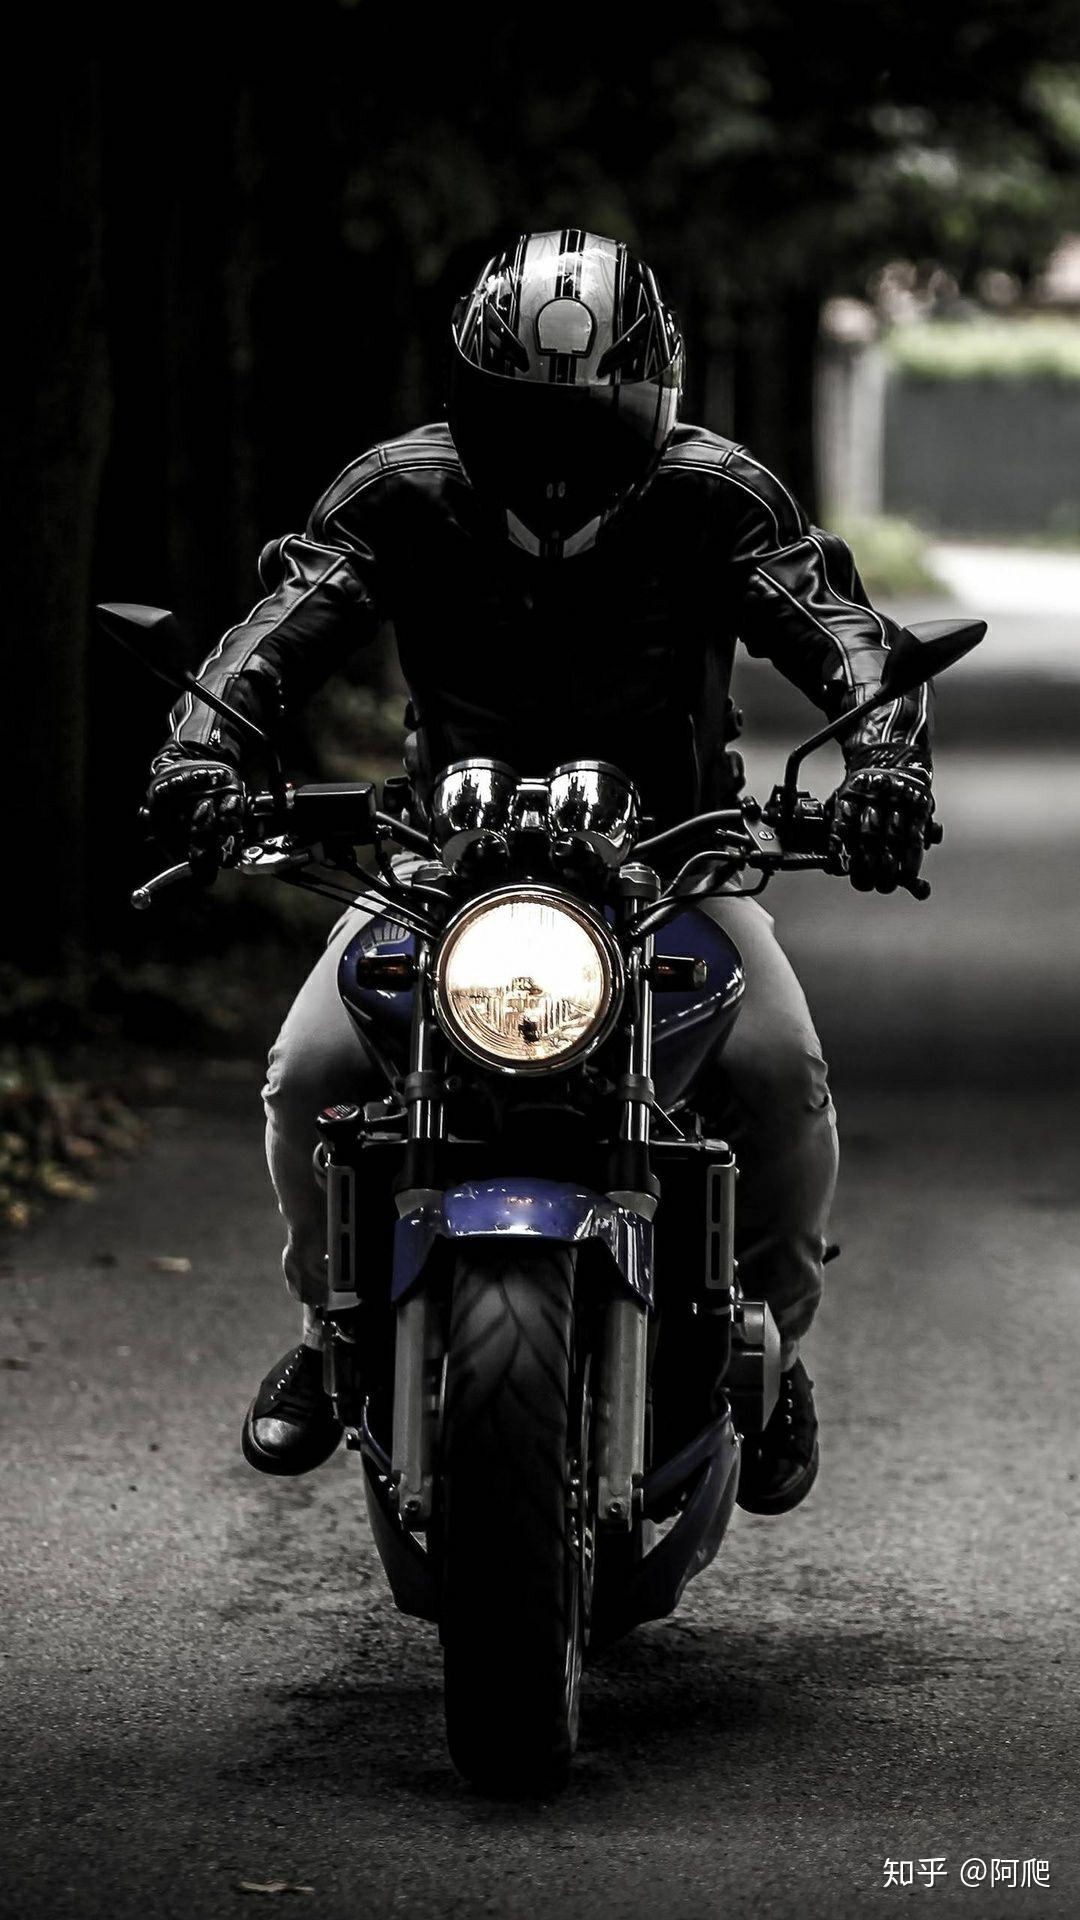 【川崎Ninja H2R摩托车高清壁纸】_摩托车图片库_摩托车之家